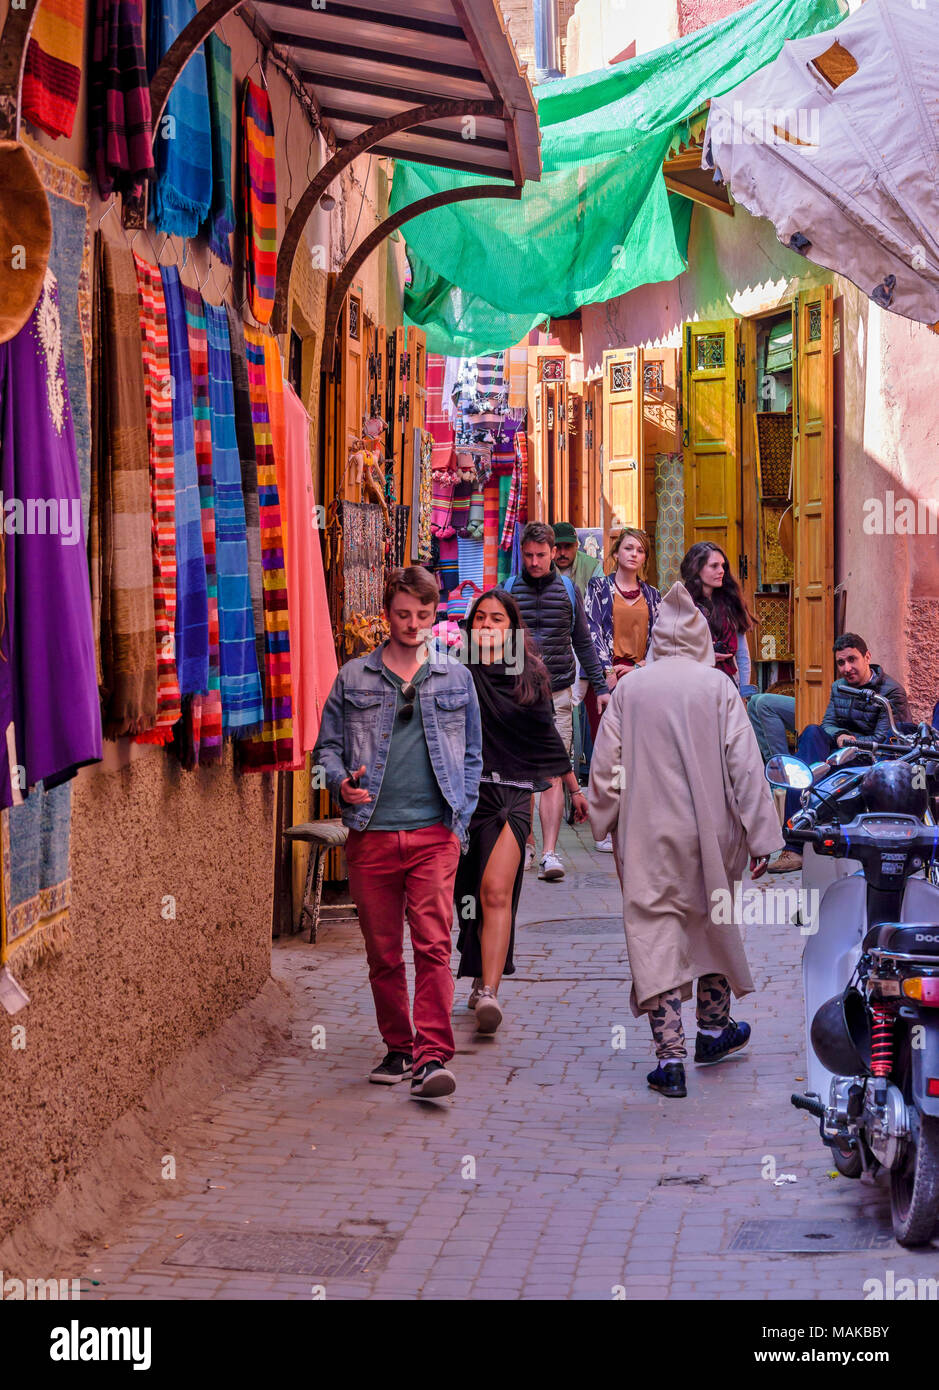 Il Marocco Marrakech Jemaa el Fna MEDINA SOUK foulard colorati e stretti vicoli del Mercato Foto Stock